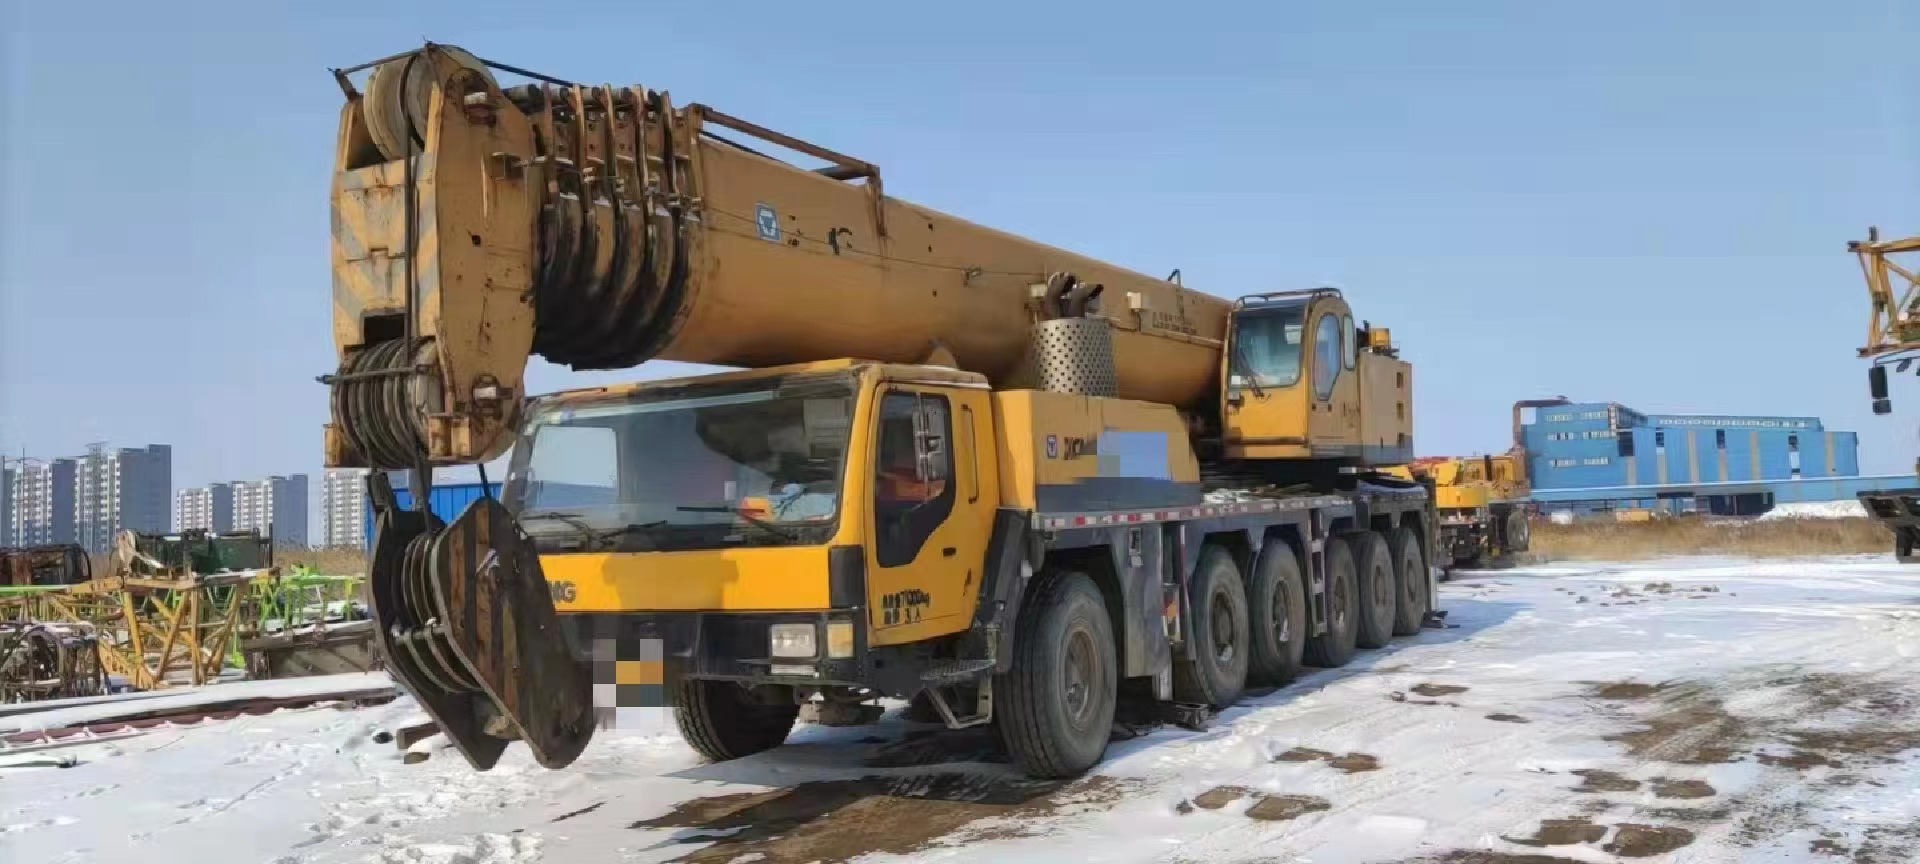 Marque chinoise d'occasion XCMG QAY160 avec camion-grue mobile tout terrain lourd de 160 tonnes pour soulever divers projets à grande échelle 9